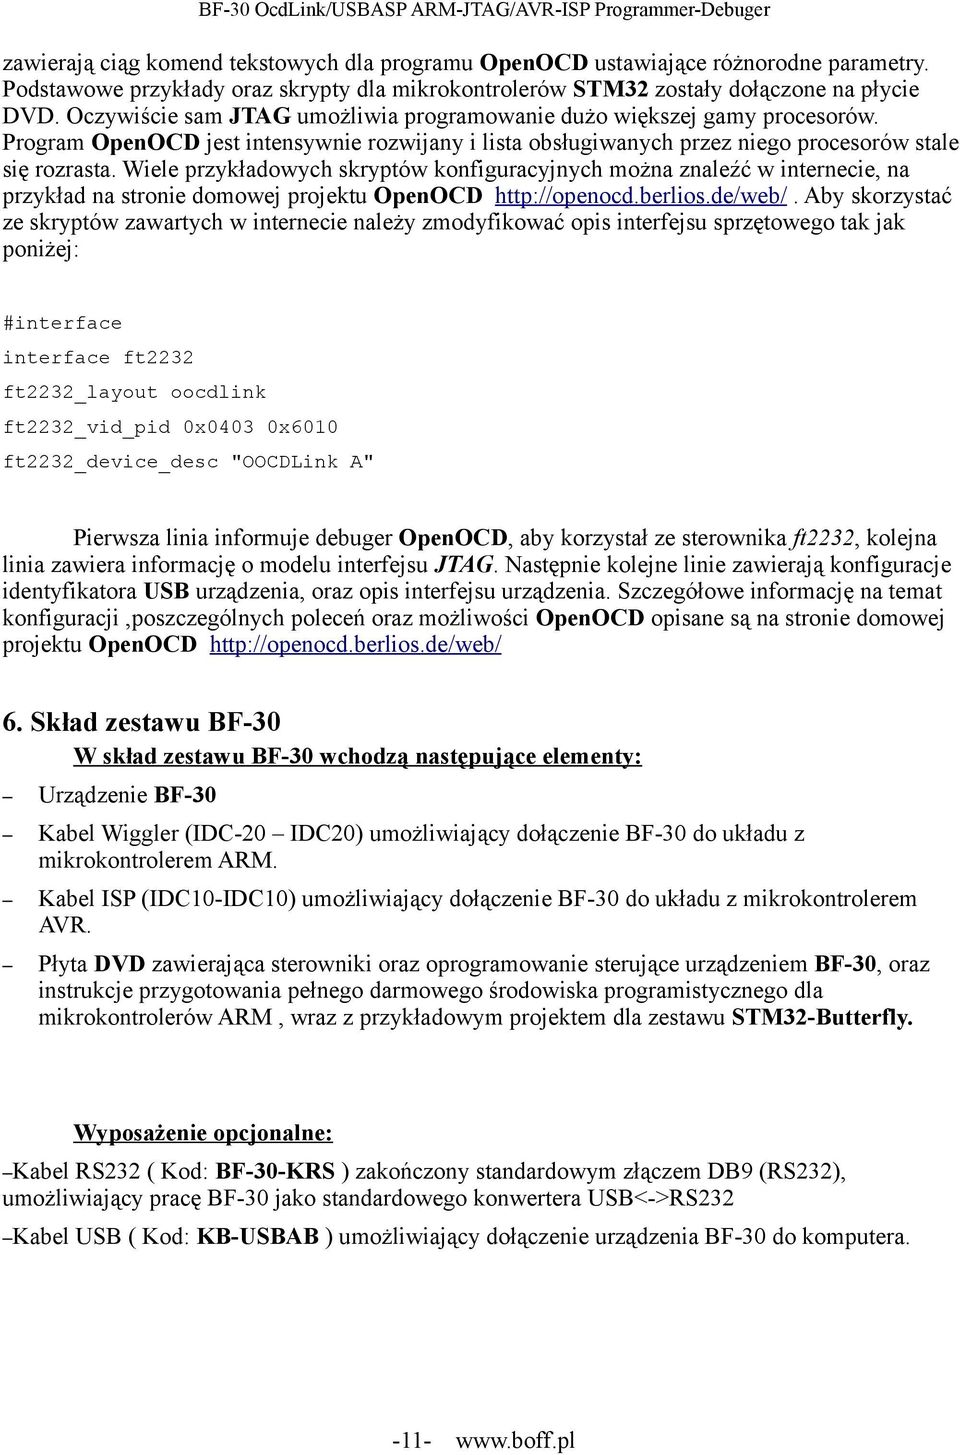 Wiele przykładowych skryptów konfiguracyjnych można znaleźć w internecie, na przykład na stronie domowej projektu OpenOCD http://openocd.berlios.de/web/.